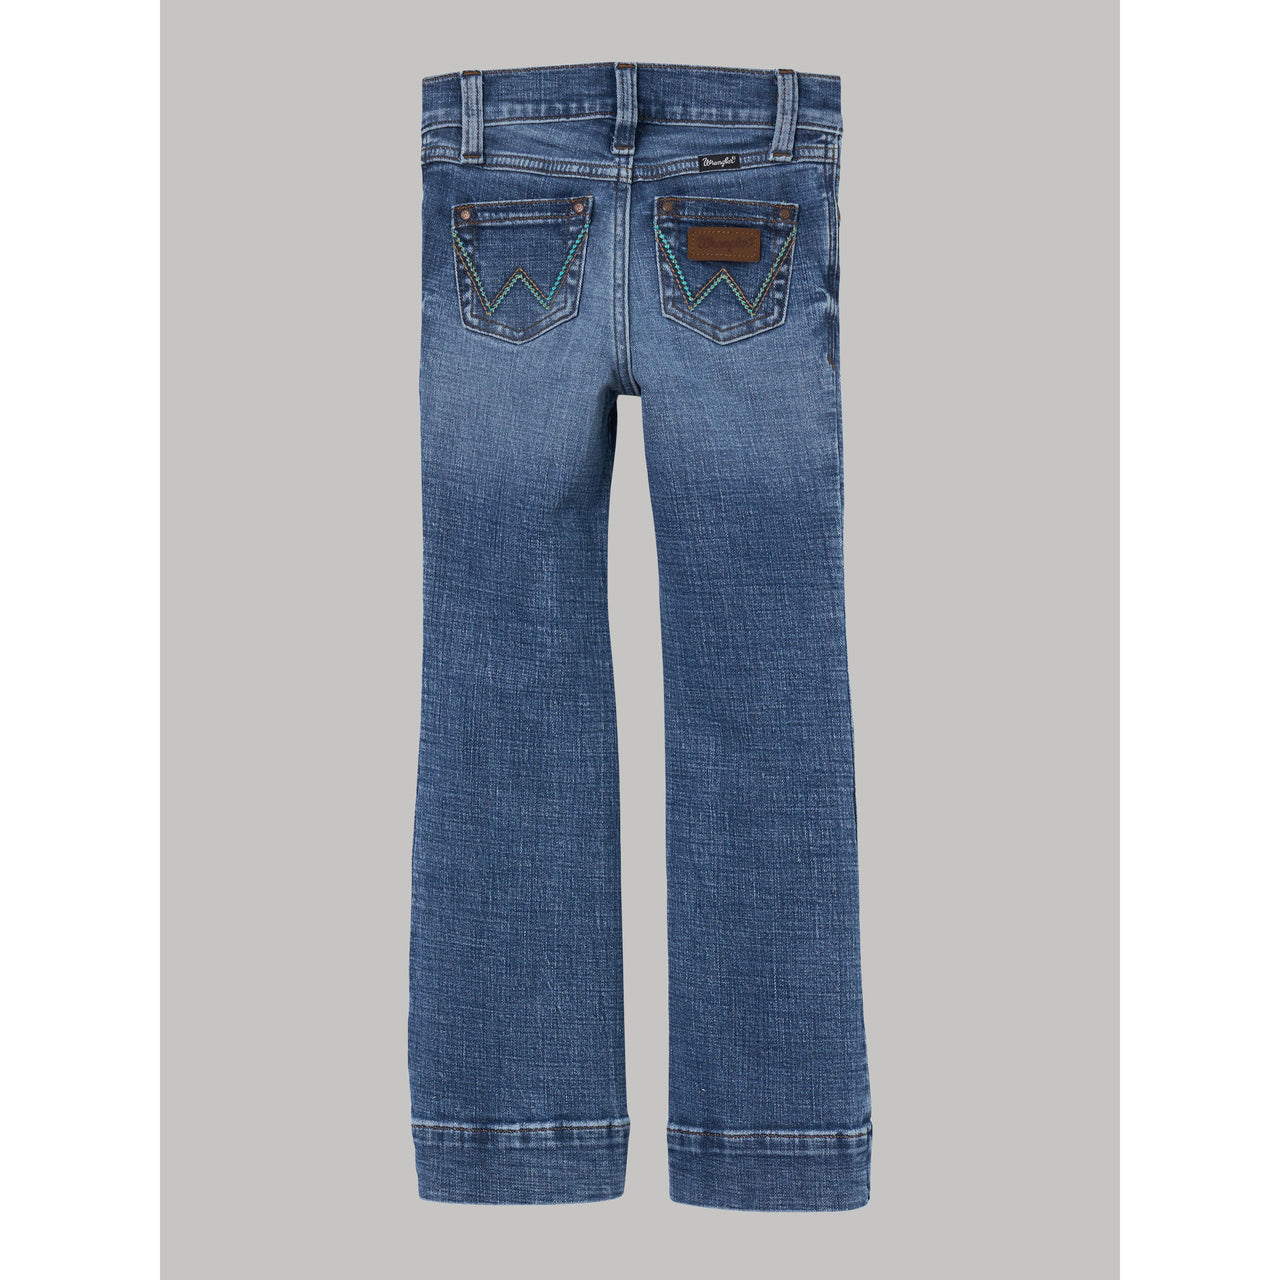 Wrangler Girl's Retro Bootcut Jeans - Embry